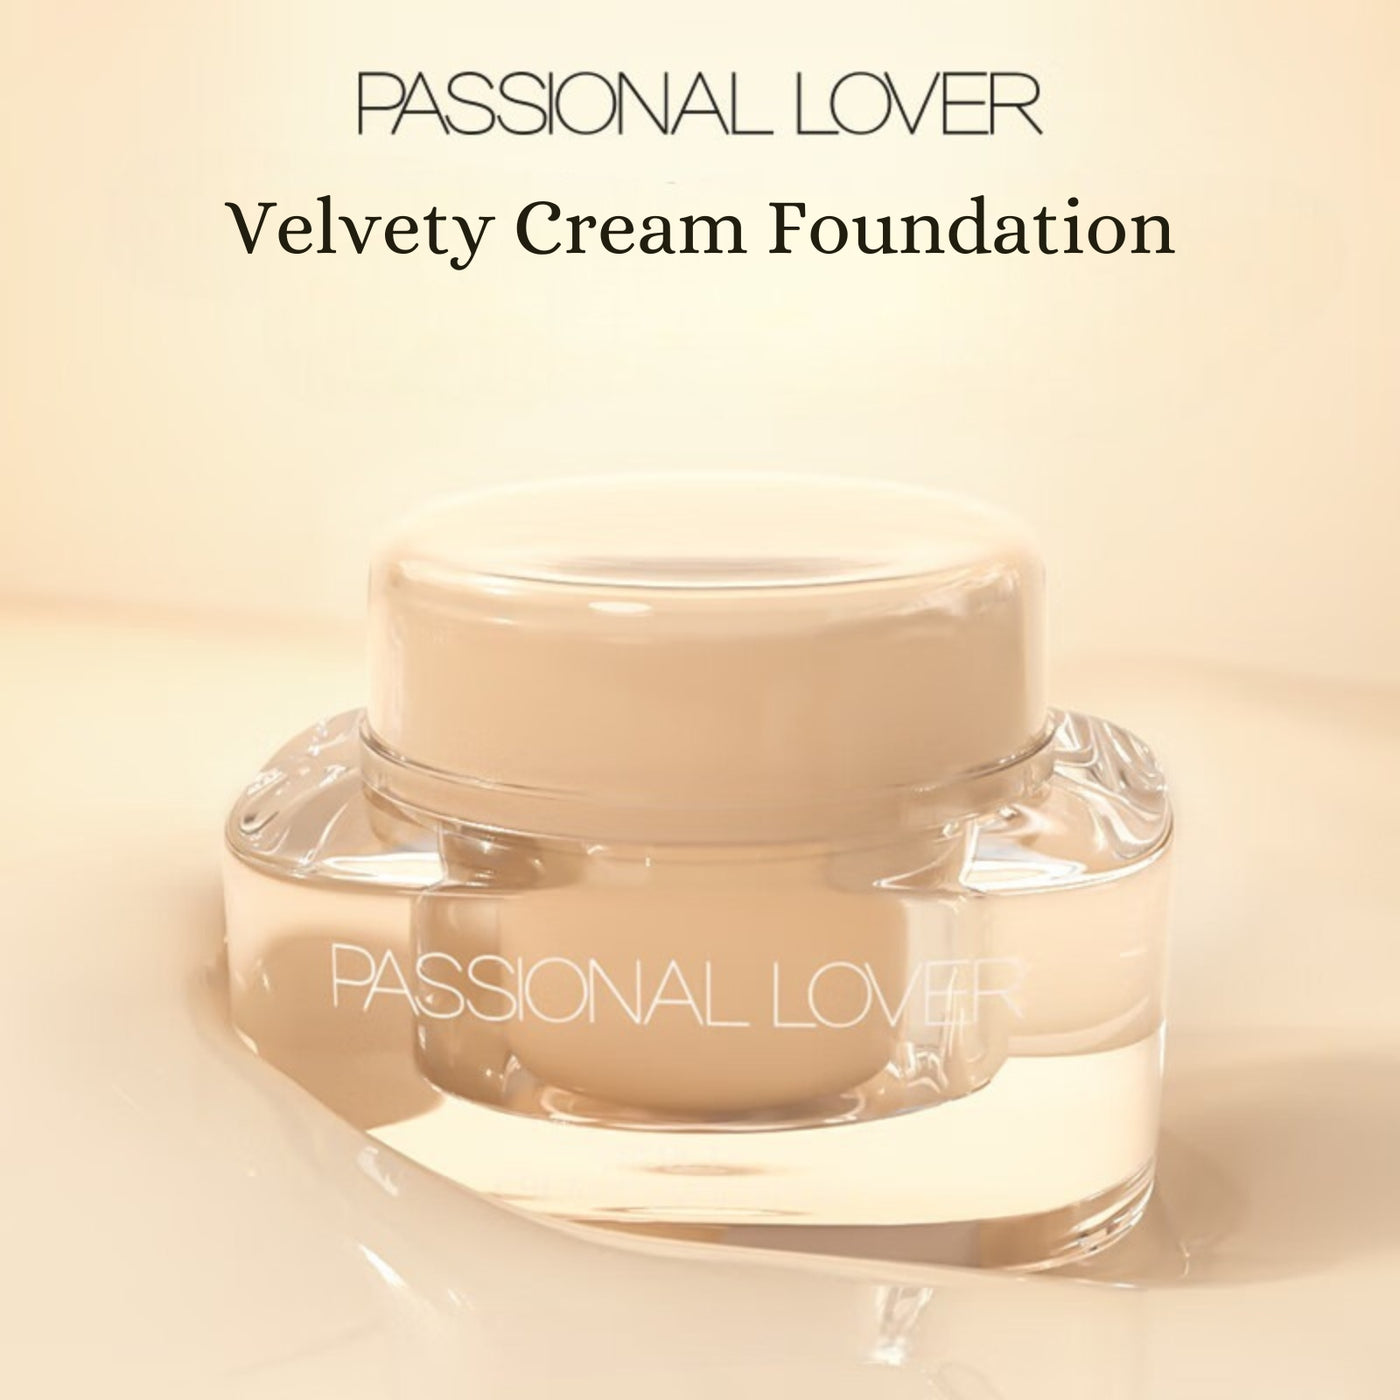 PASSIONAL LOVER Velvety Cream Foundation for Mature & Dry Skin